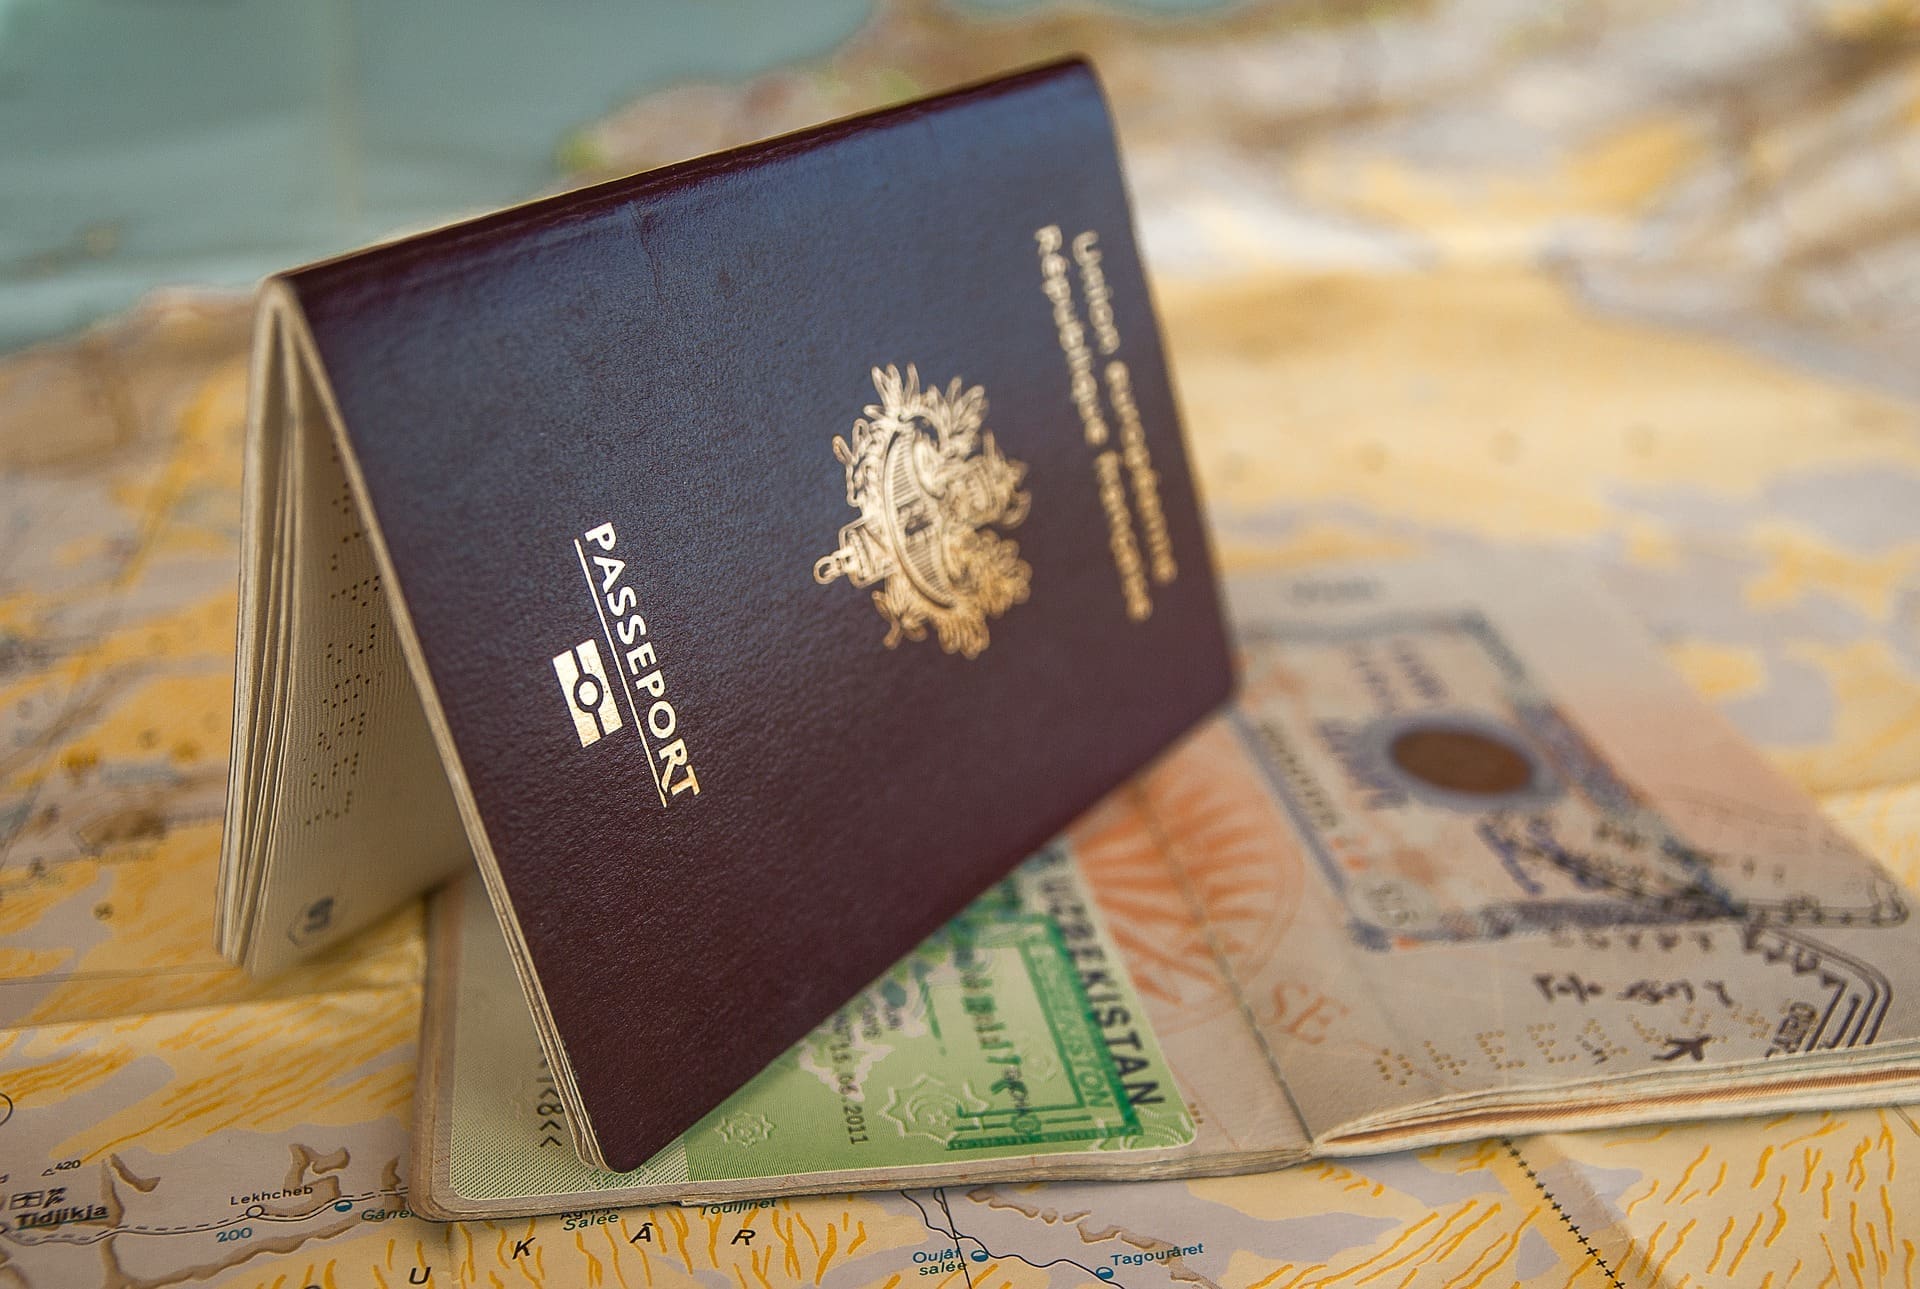 eu travel expired passport